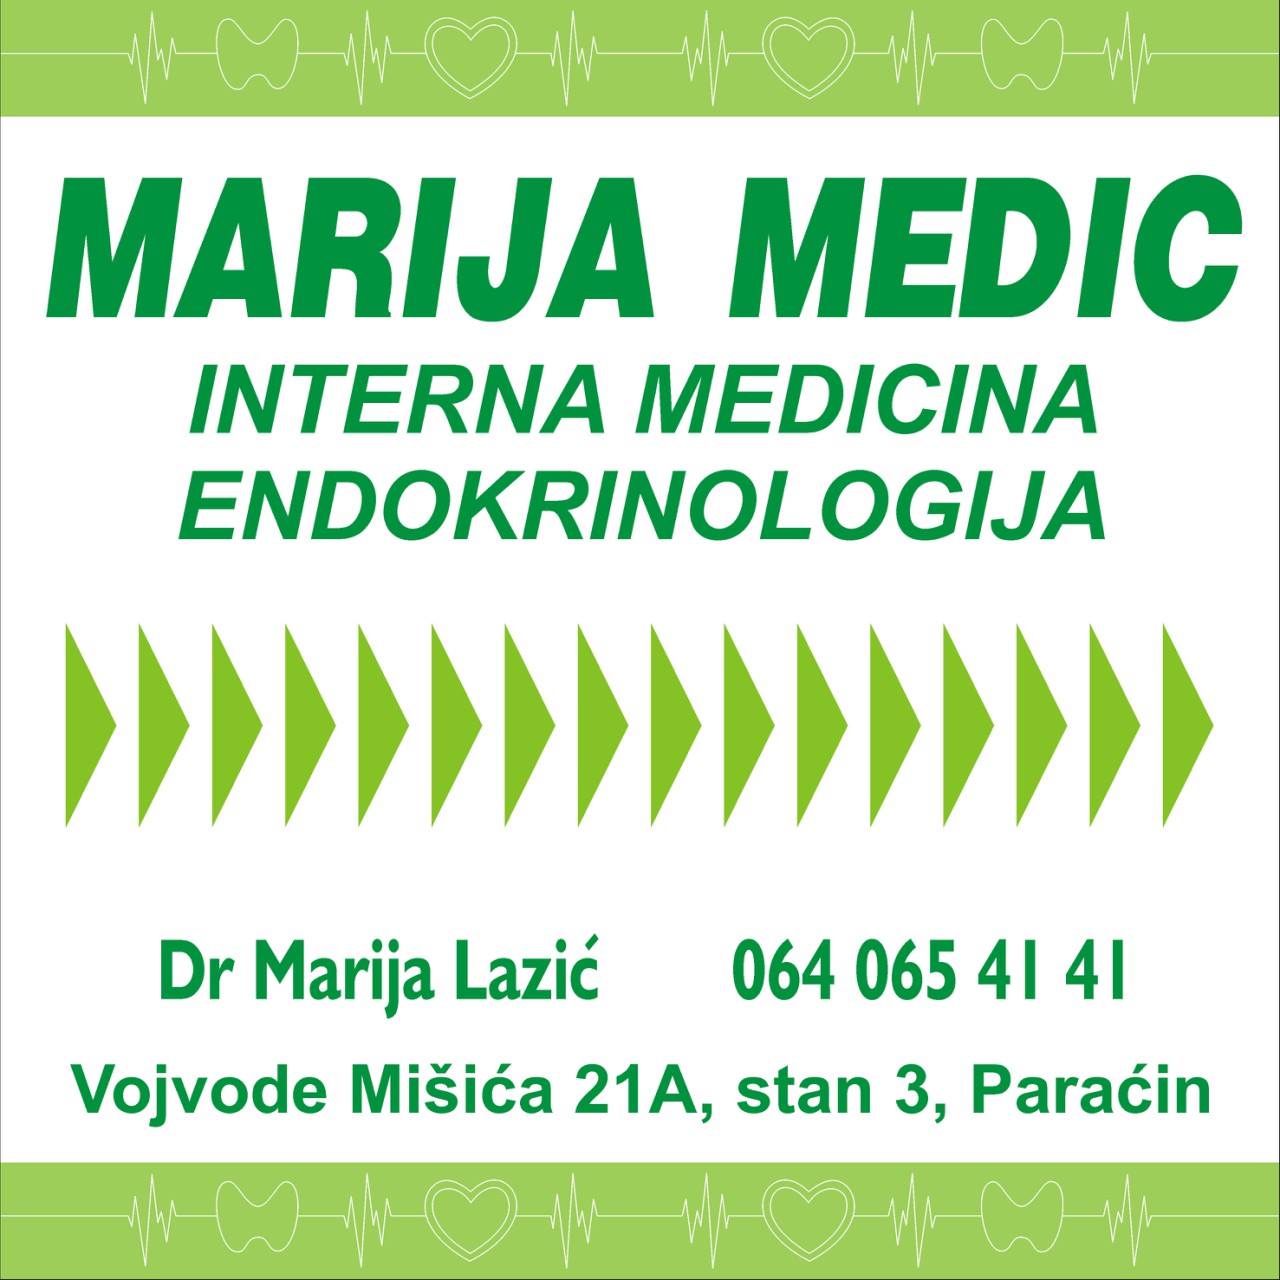 Specijalistička internistička ordinacija „Marija Medic“